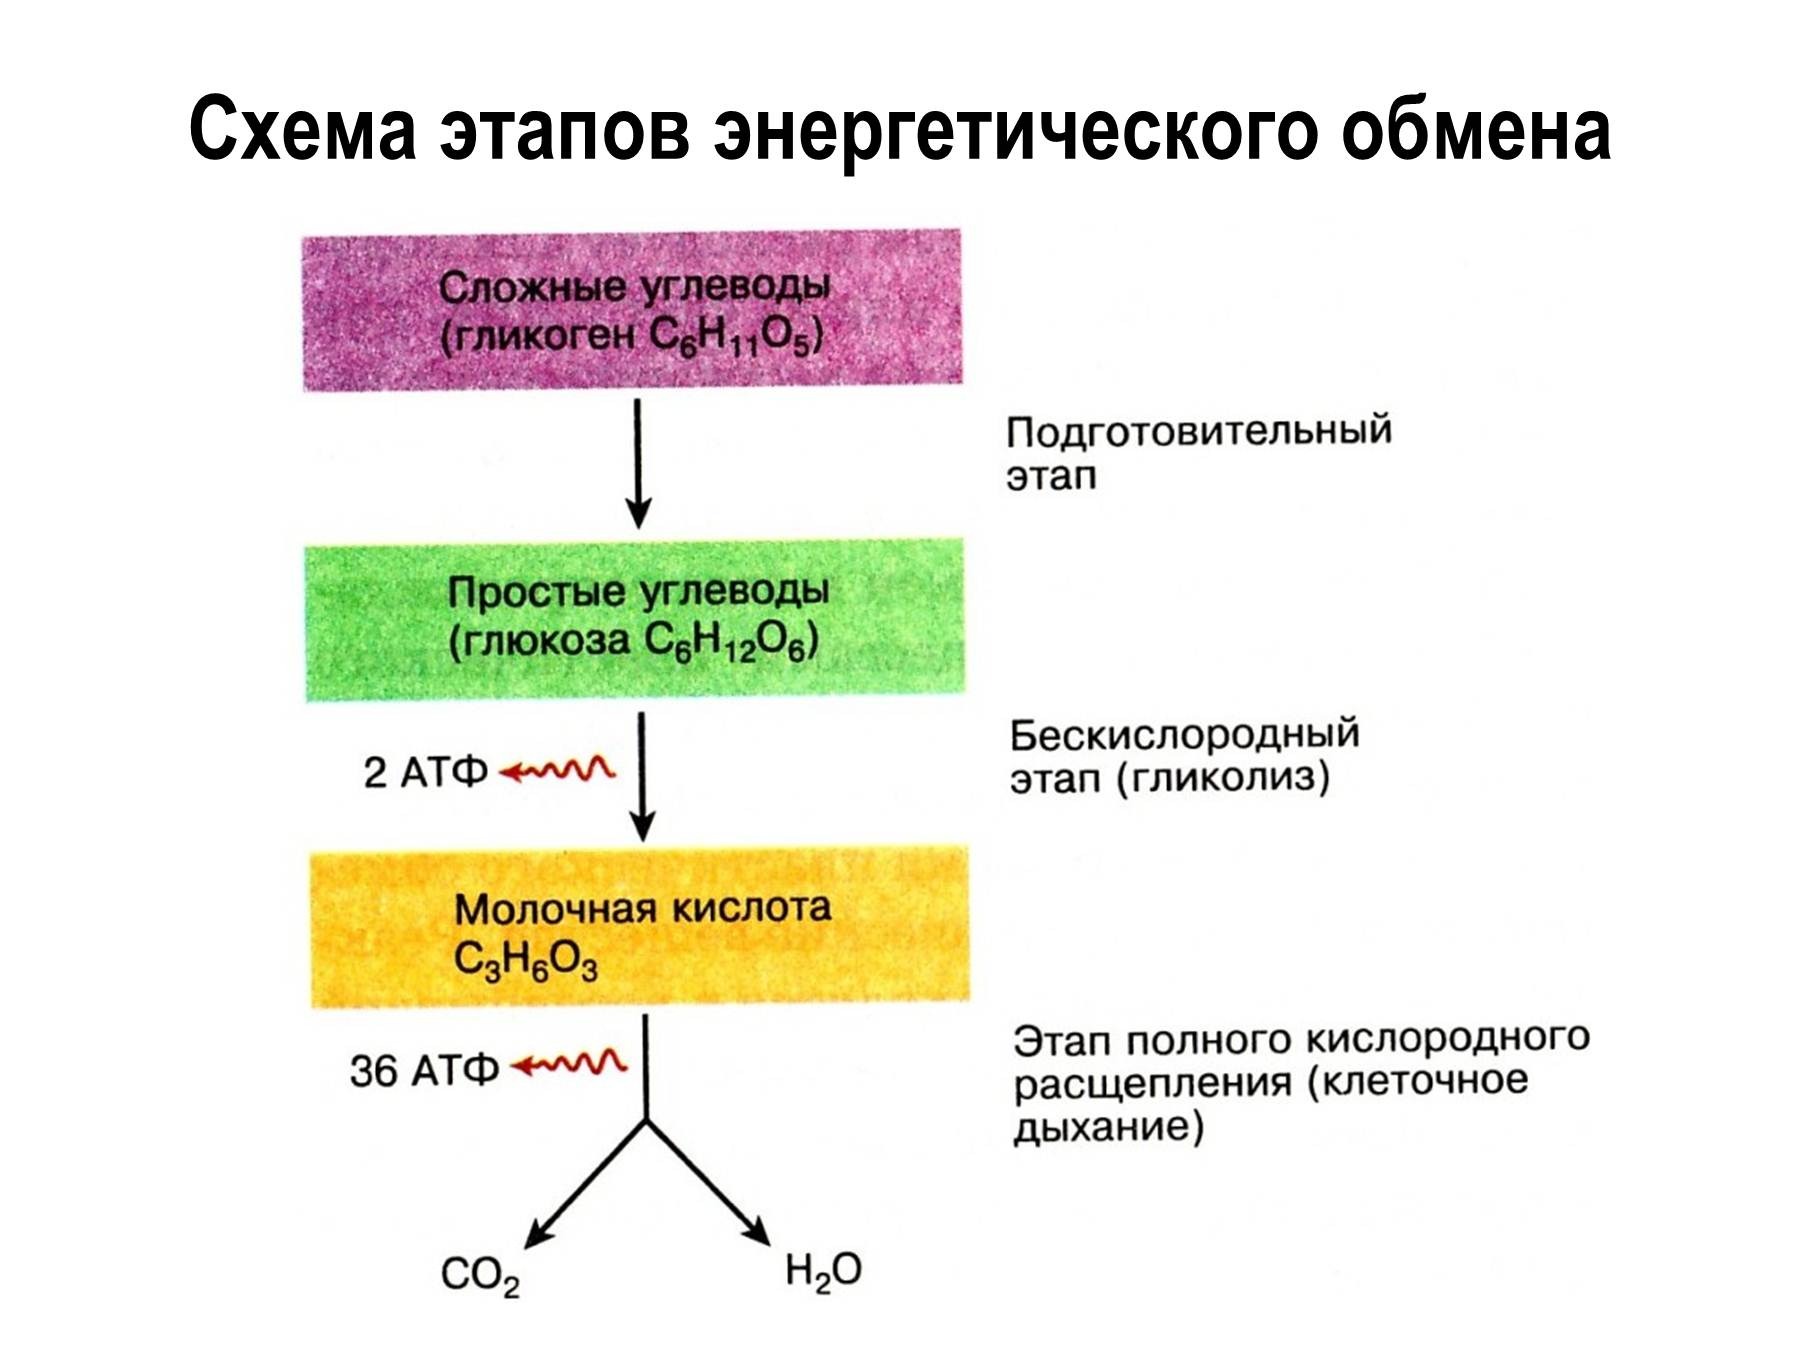 Активация глюкозы с затратой атф. Этапы энергия обмена веществ схема. Охарактеризуйте этапы энергетического обмена..